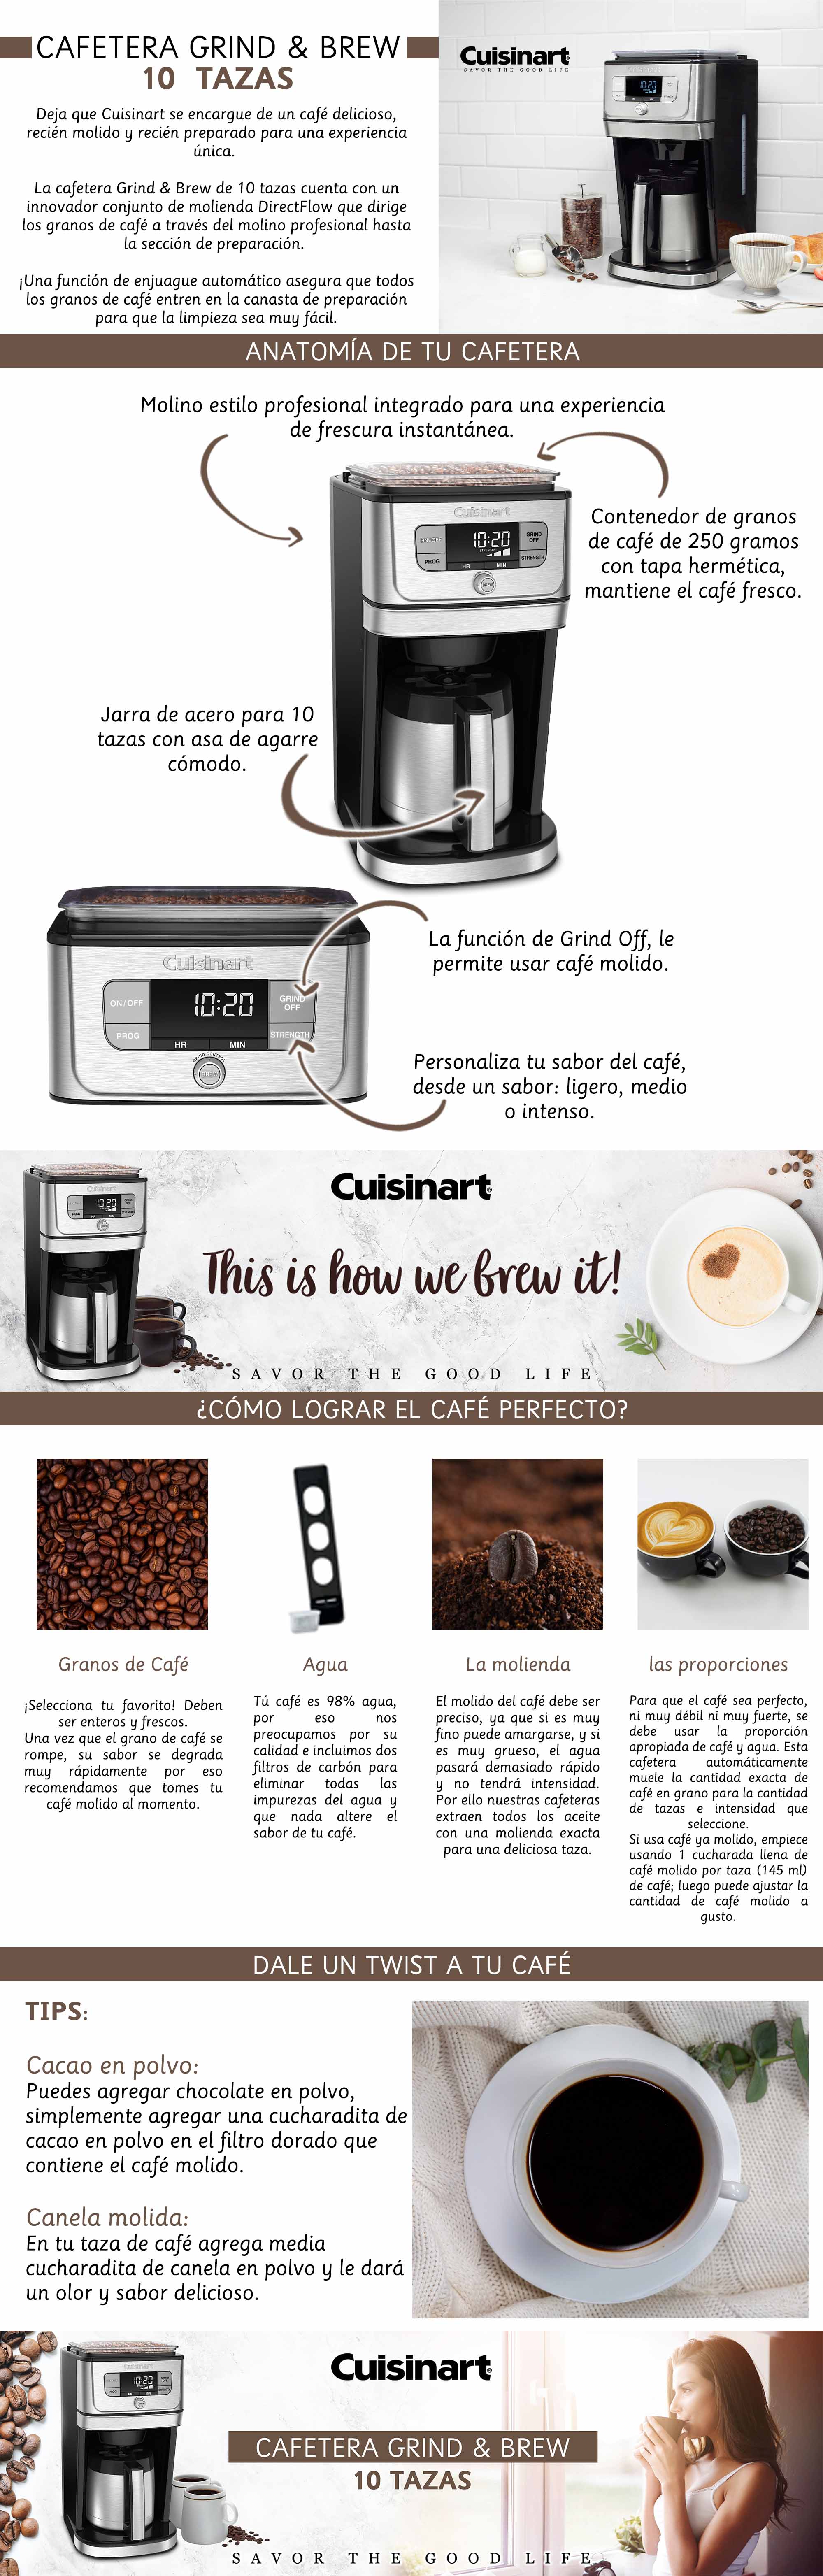 CafeteraGrind Infografia